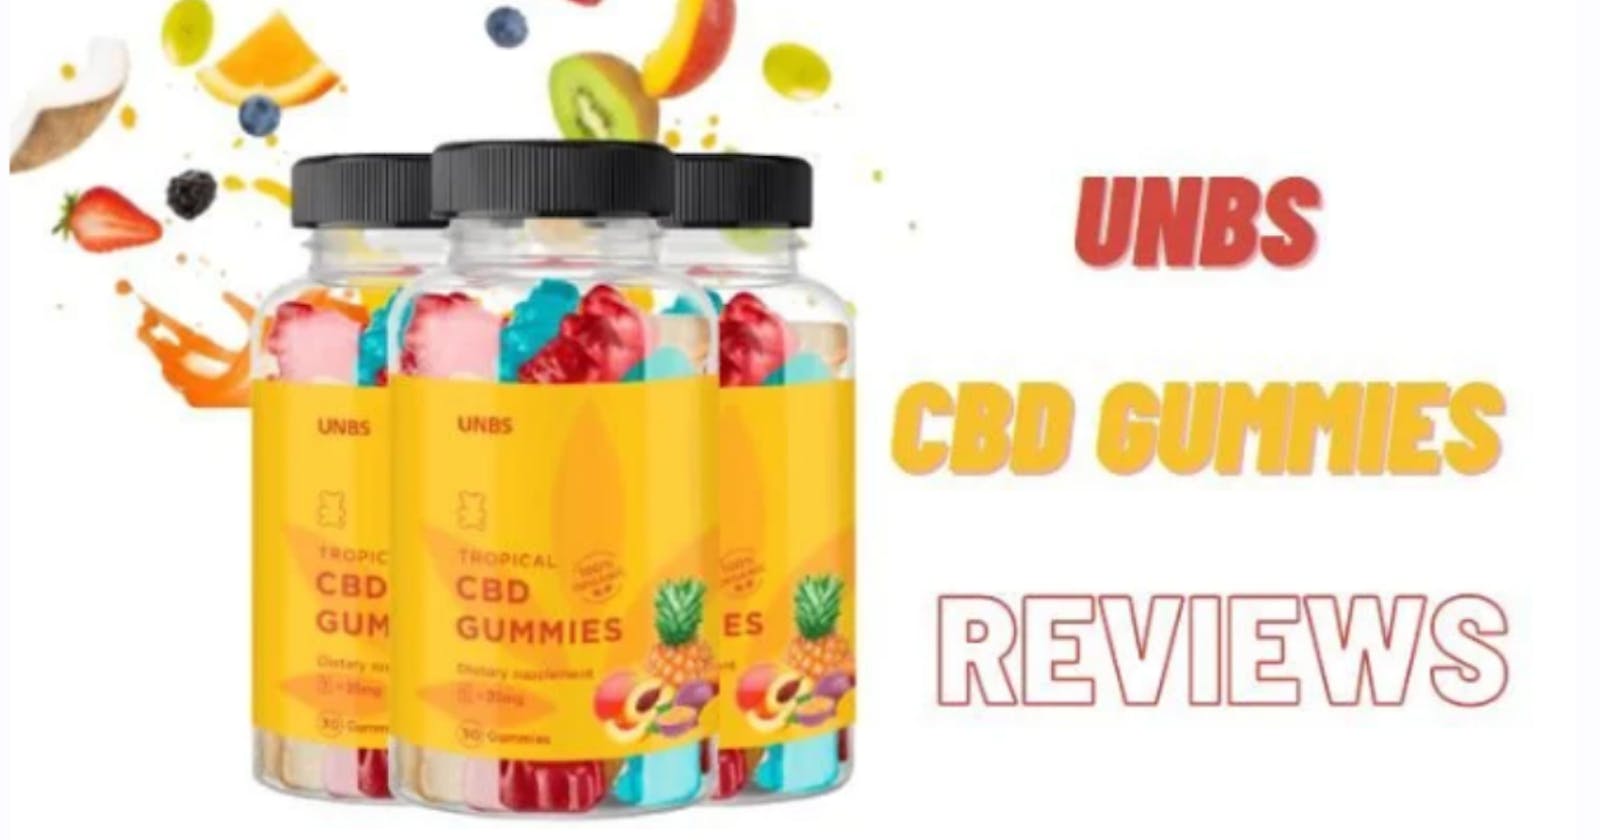 UNBS CBD Gummies Reviews & Shocking Ingredients Must Read Before Buying?